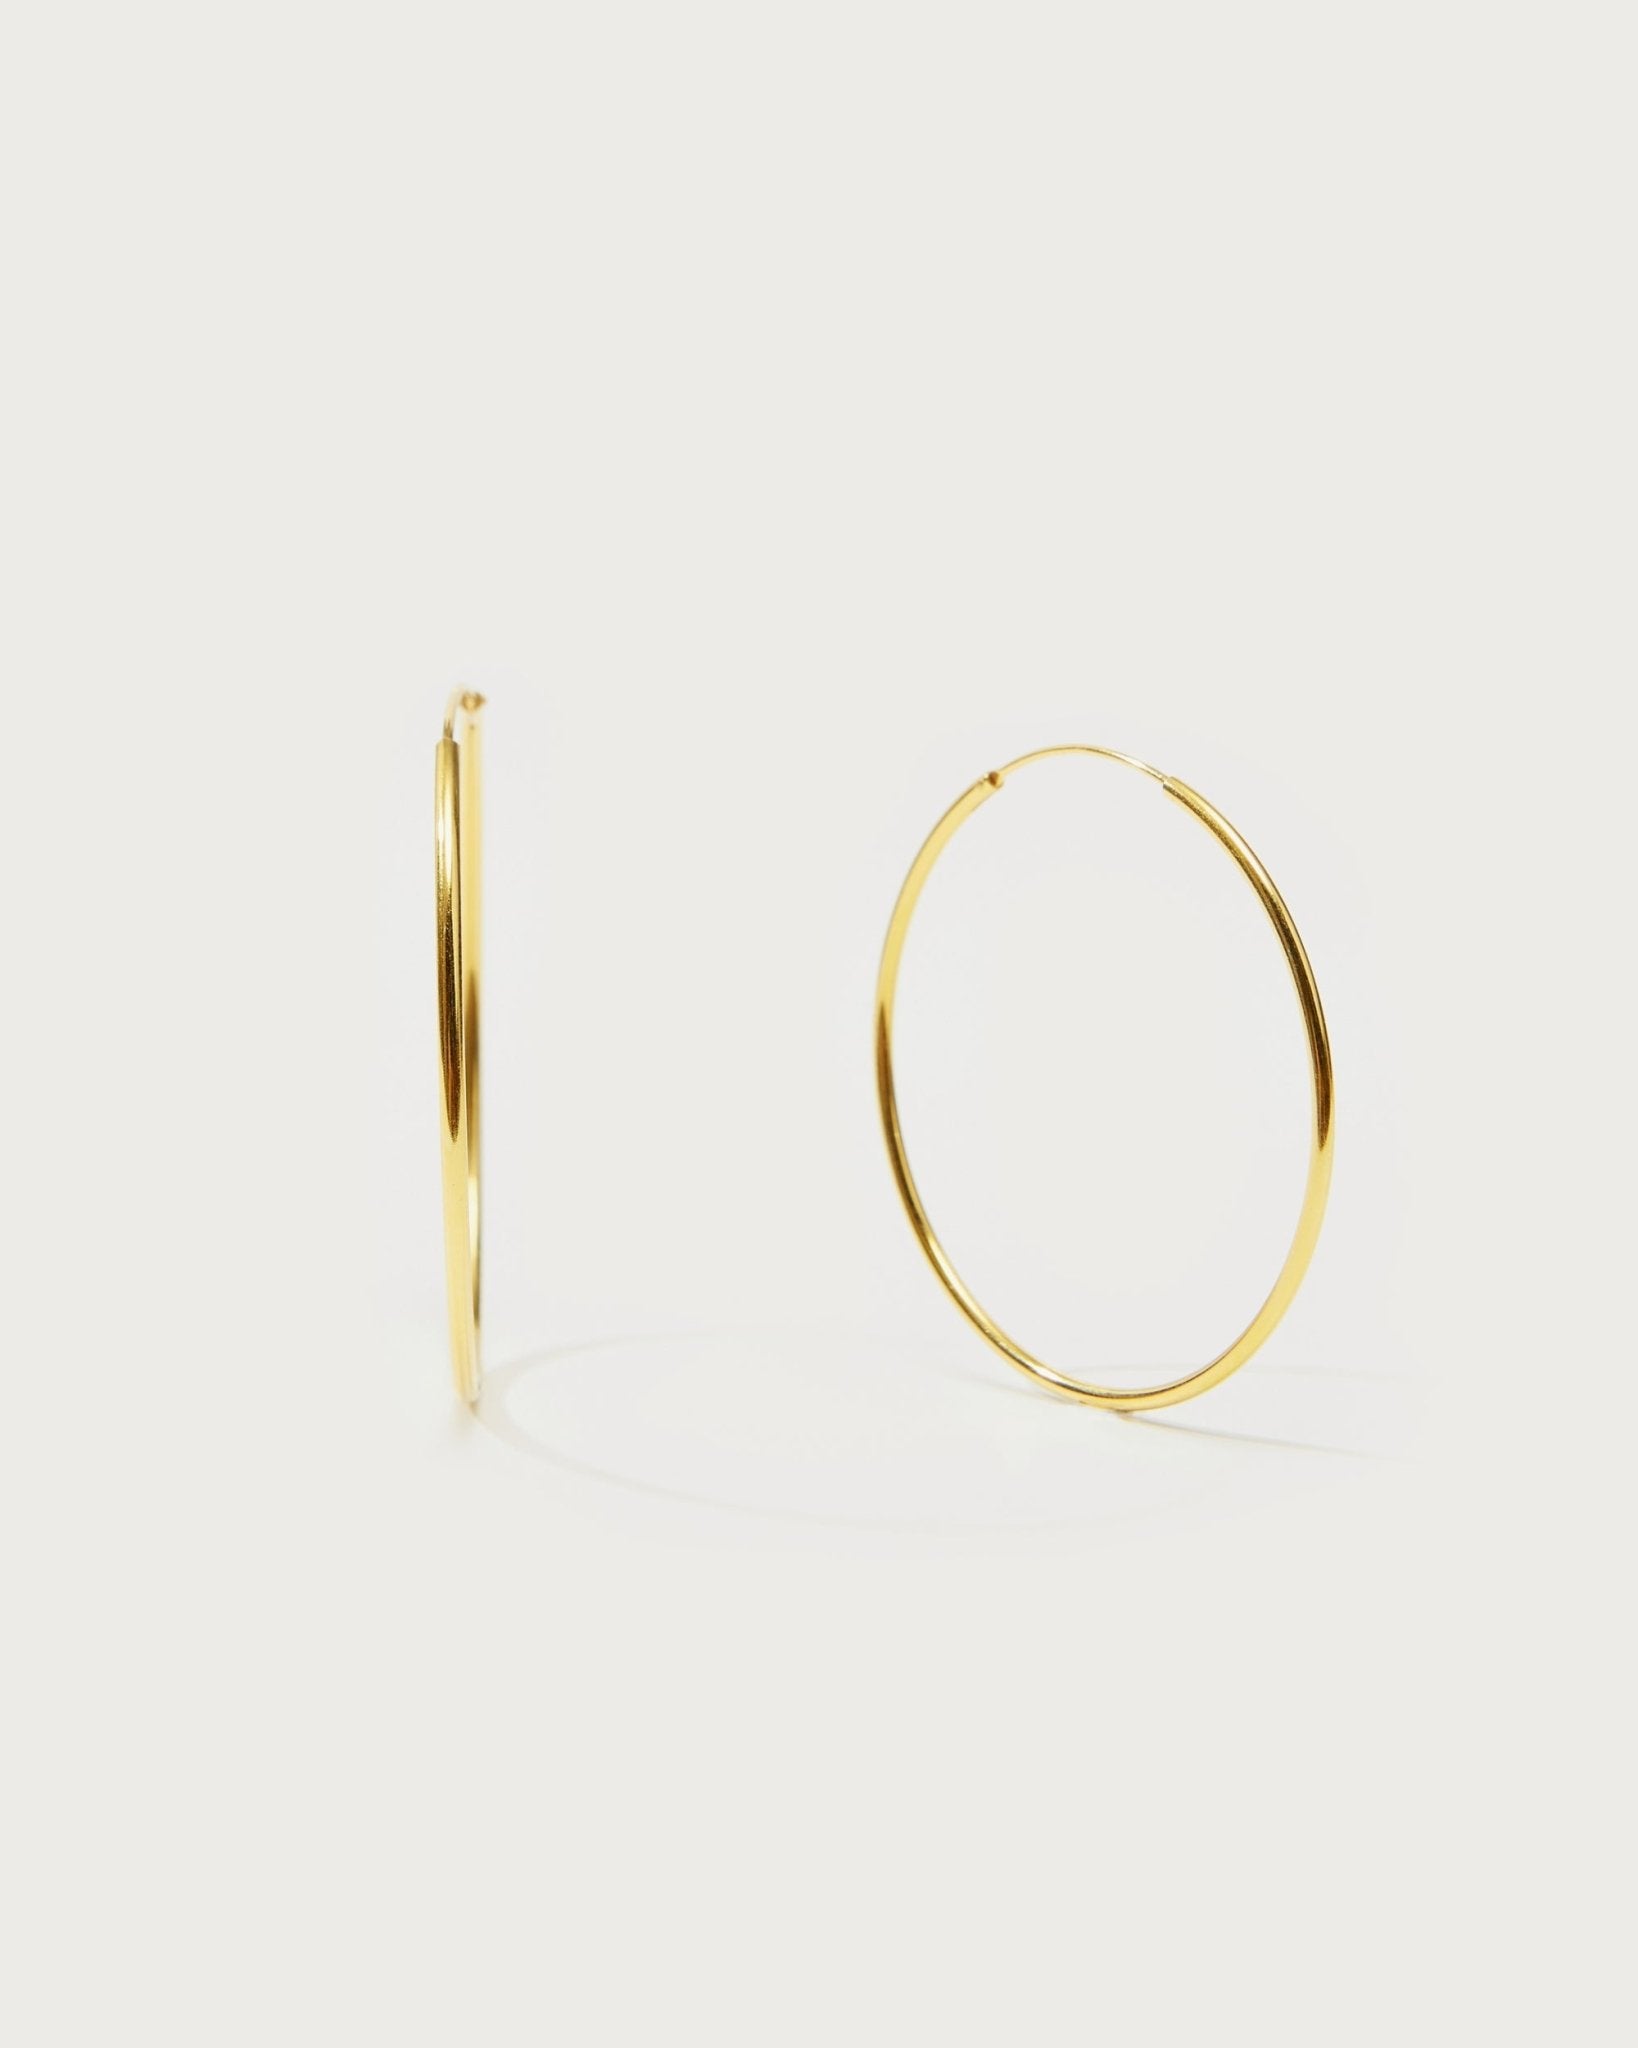 Gold 40mm Skinny Hoop Earrings